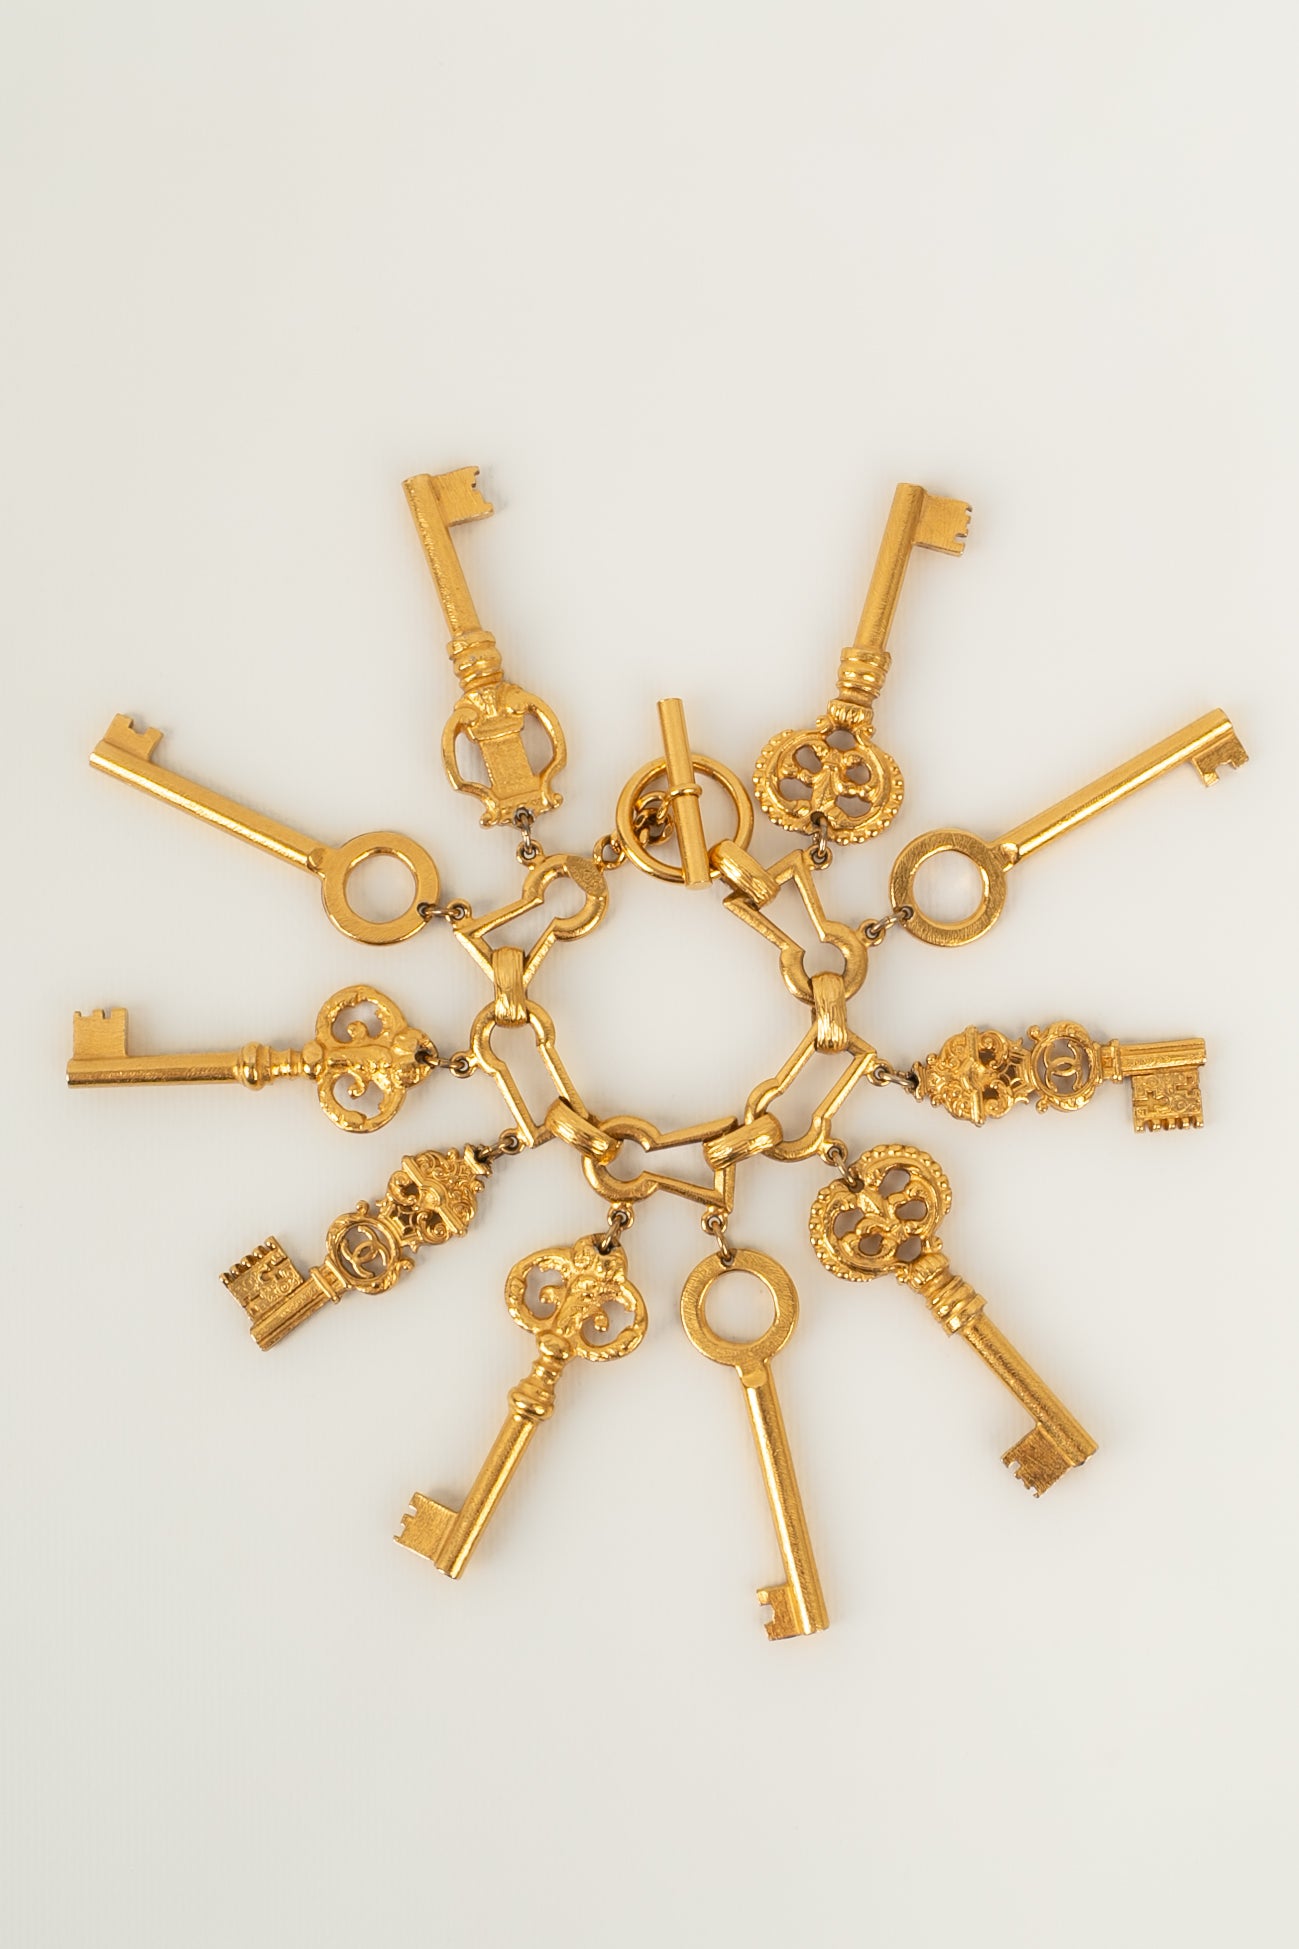 Iconique bracelet "clés" Chanel 1993